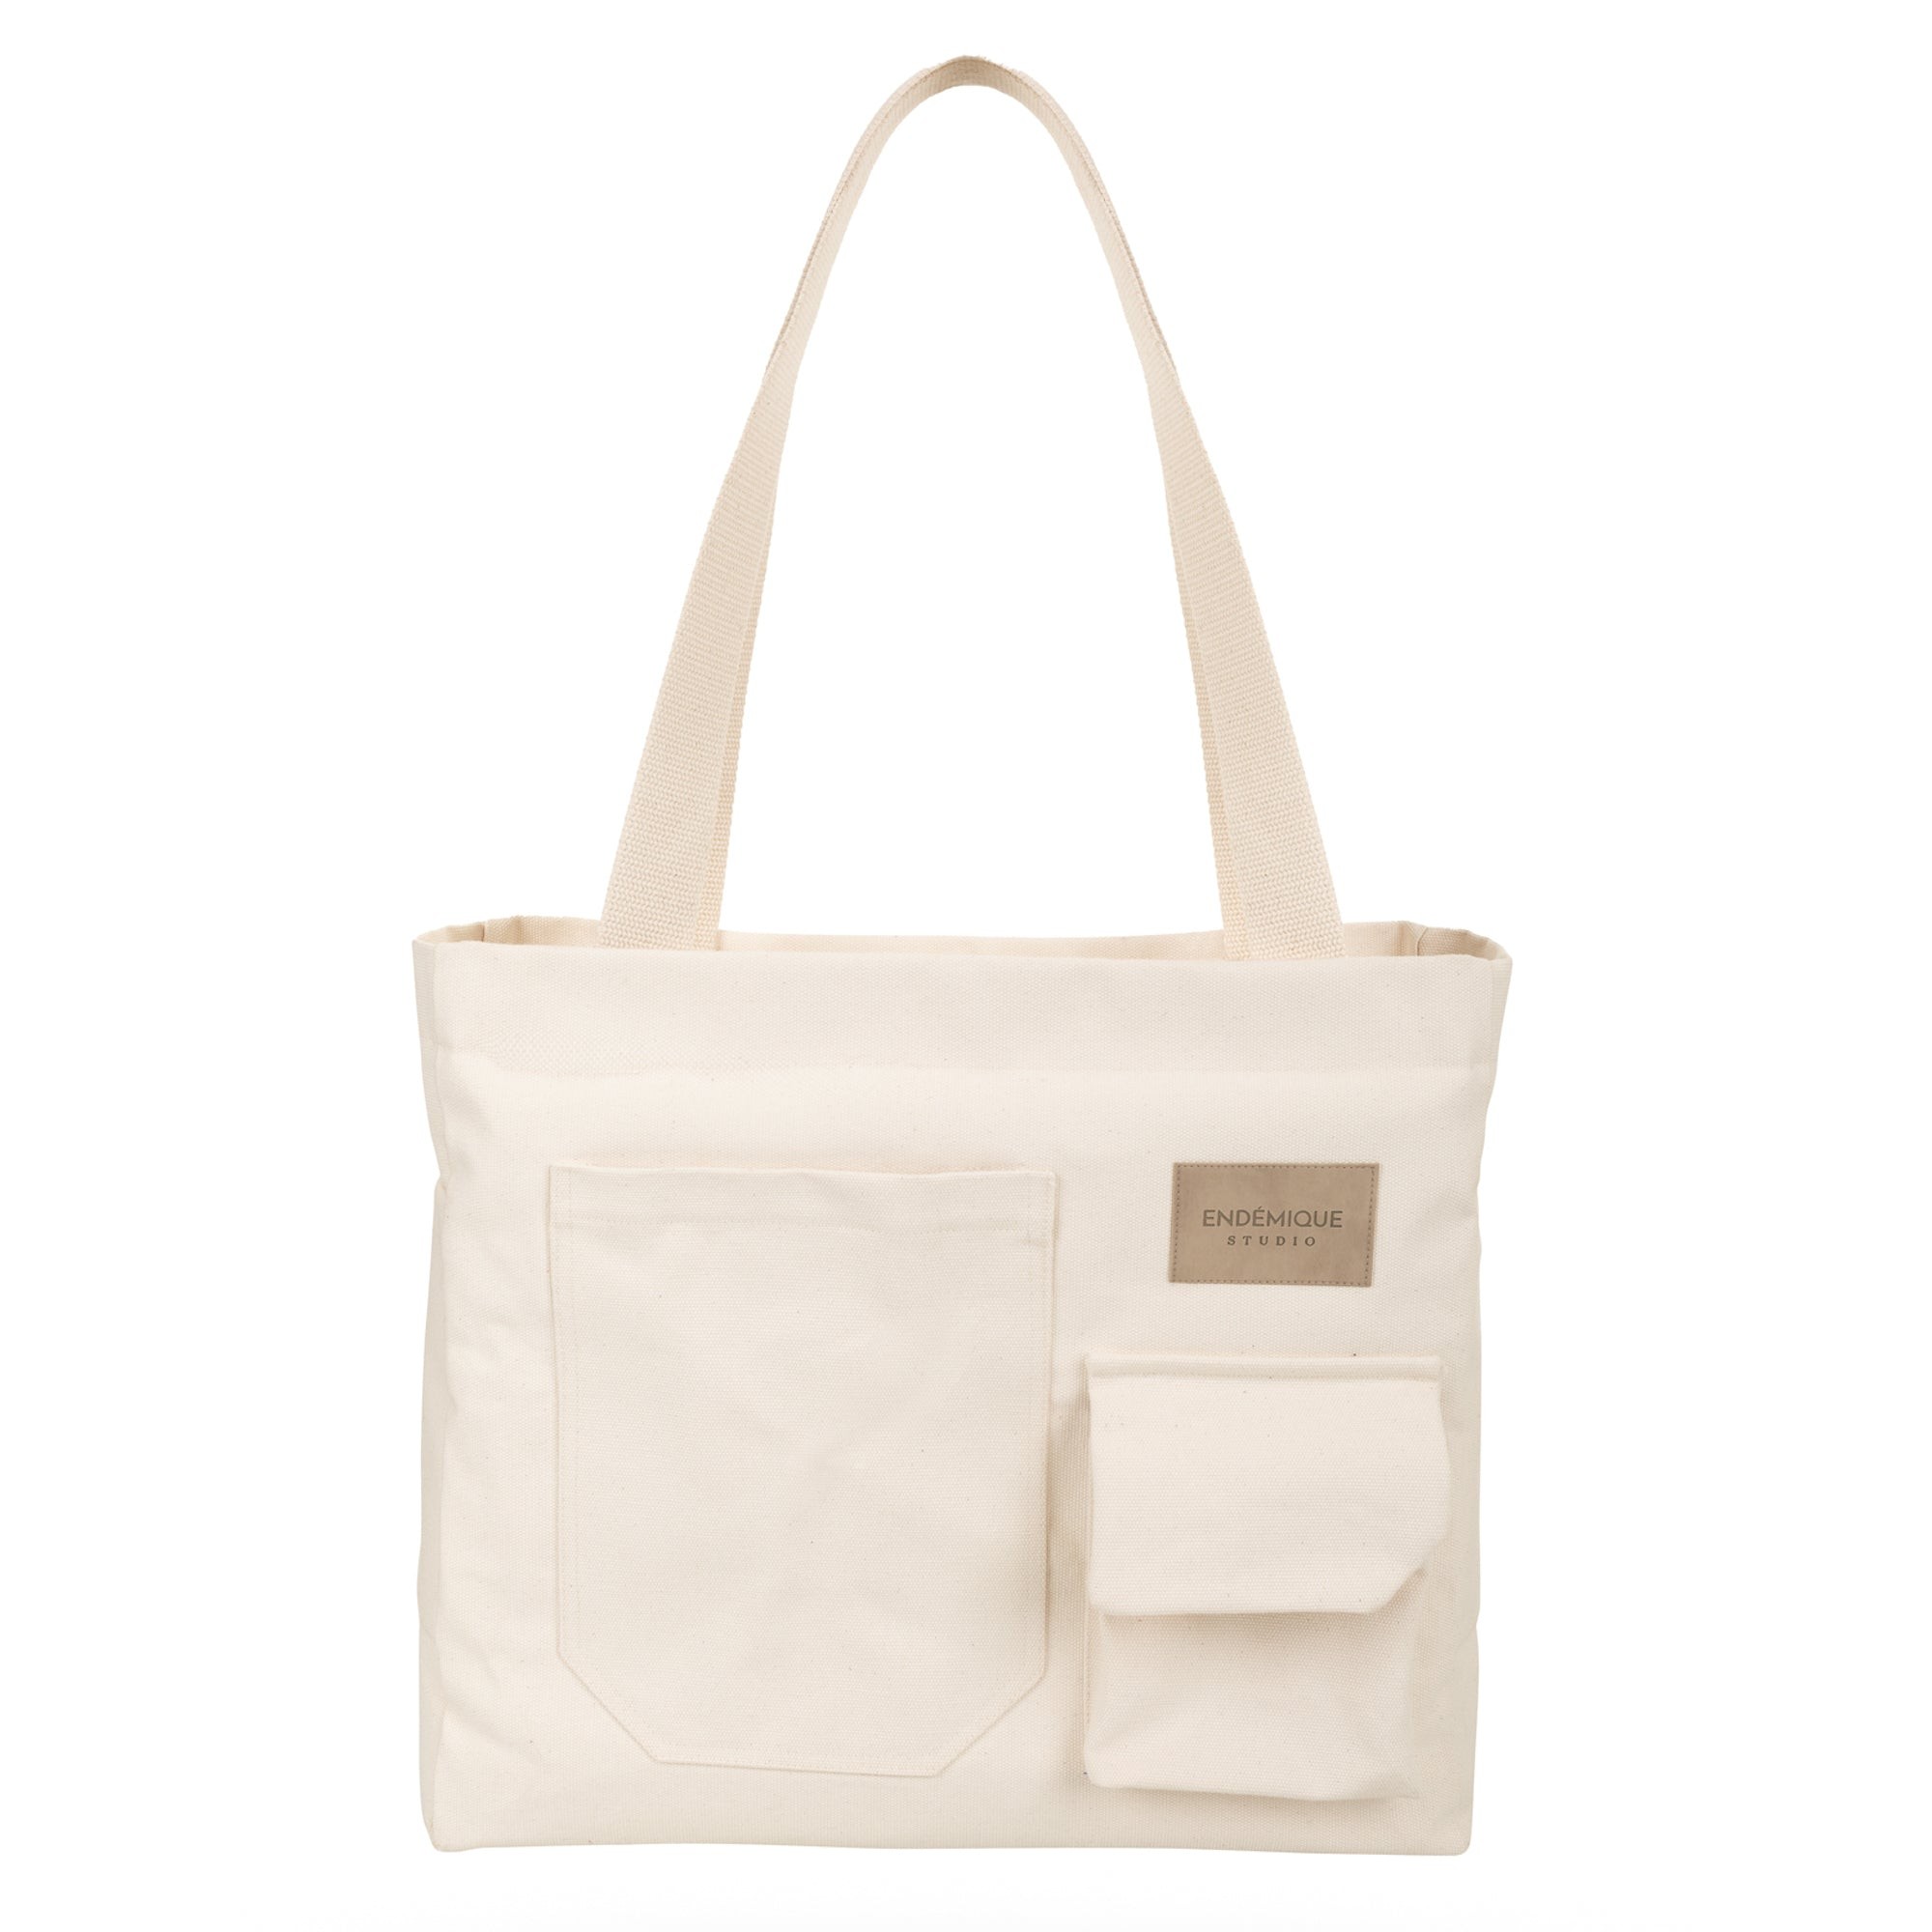 Endémique Studio La Lune Tote Bag Cotton White